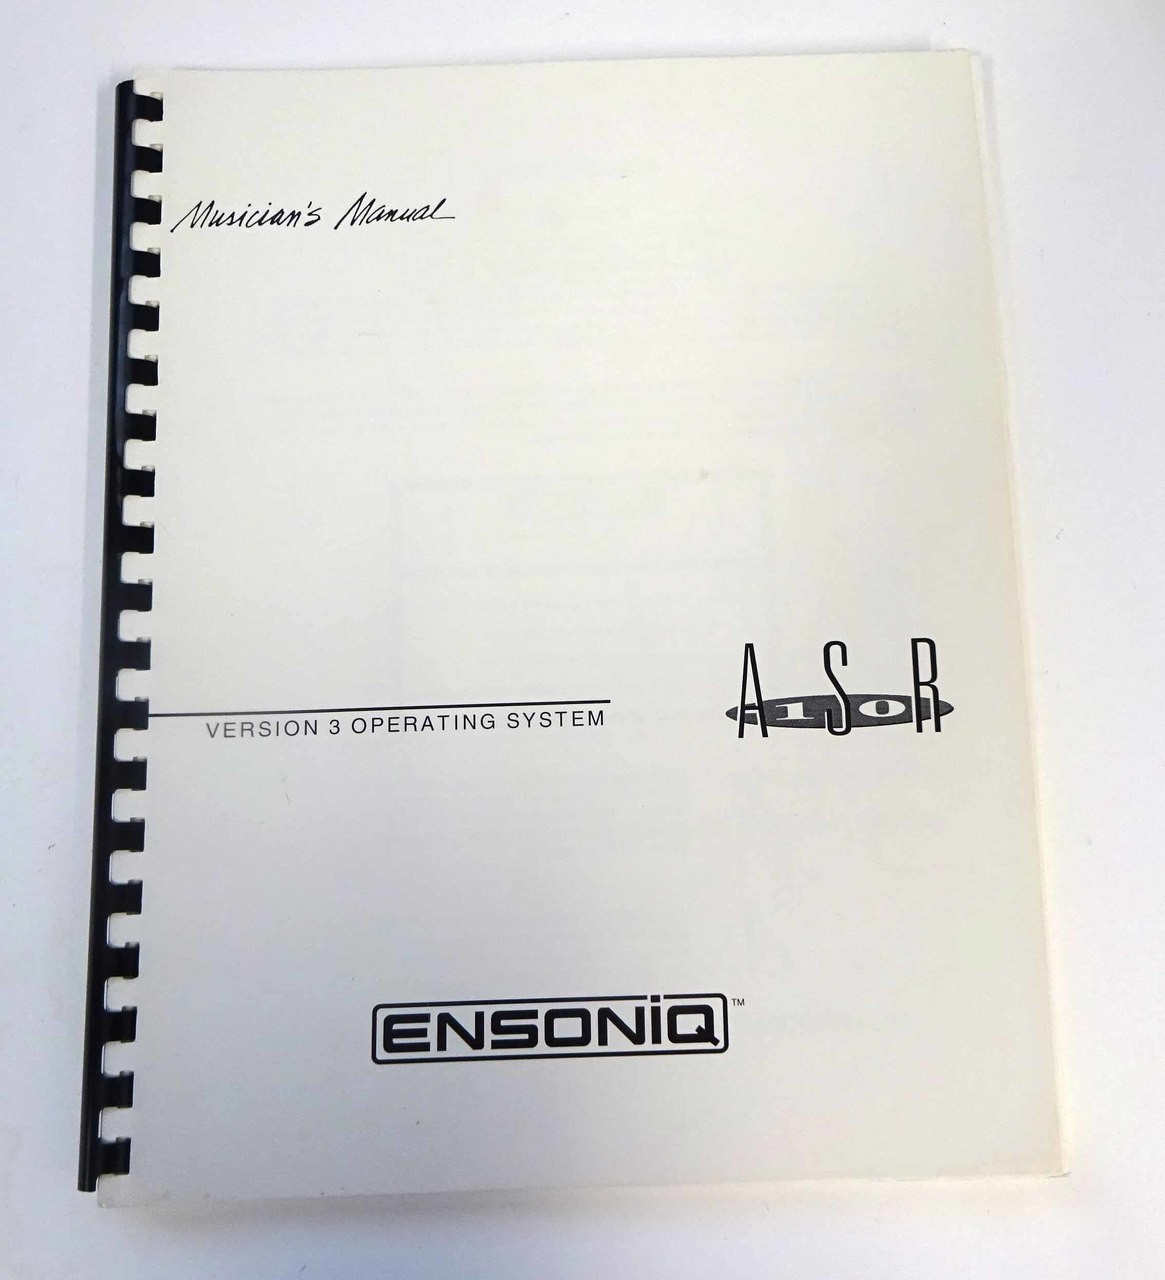 Ensoniq ASR-10 Version 3 Musicians Manual